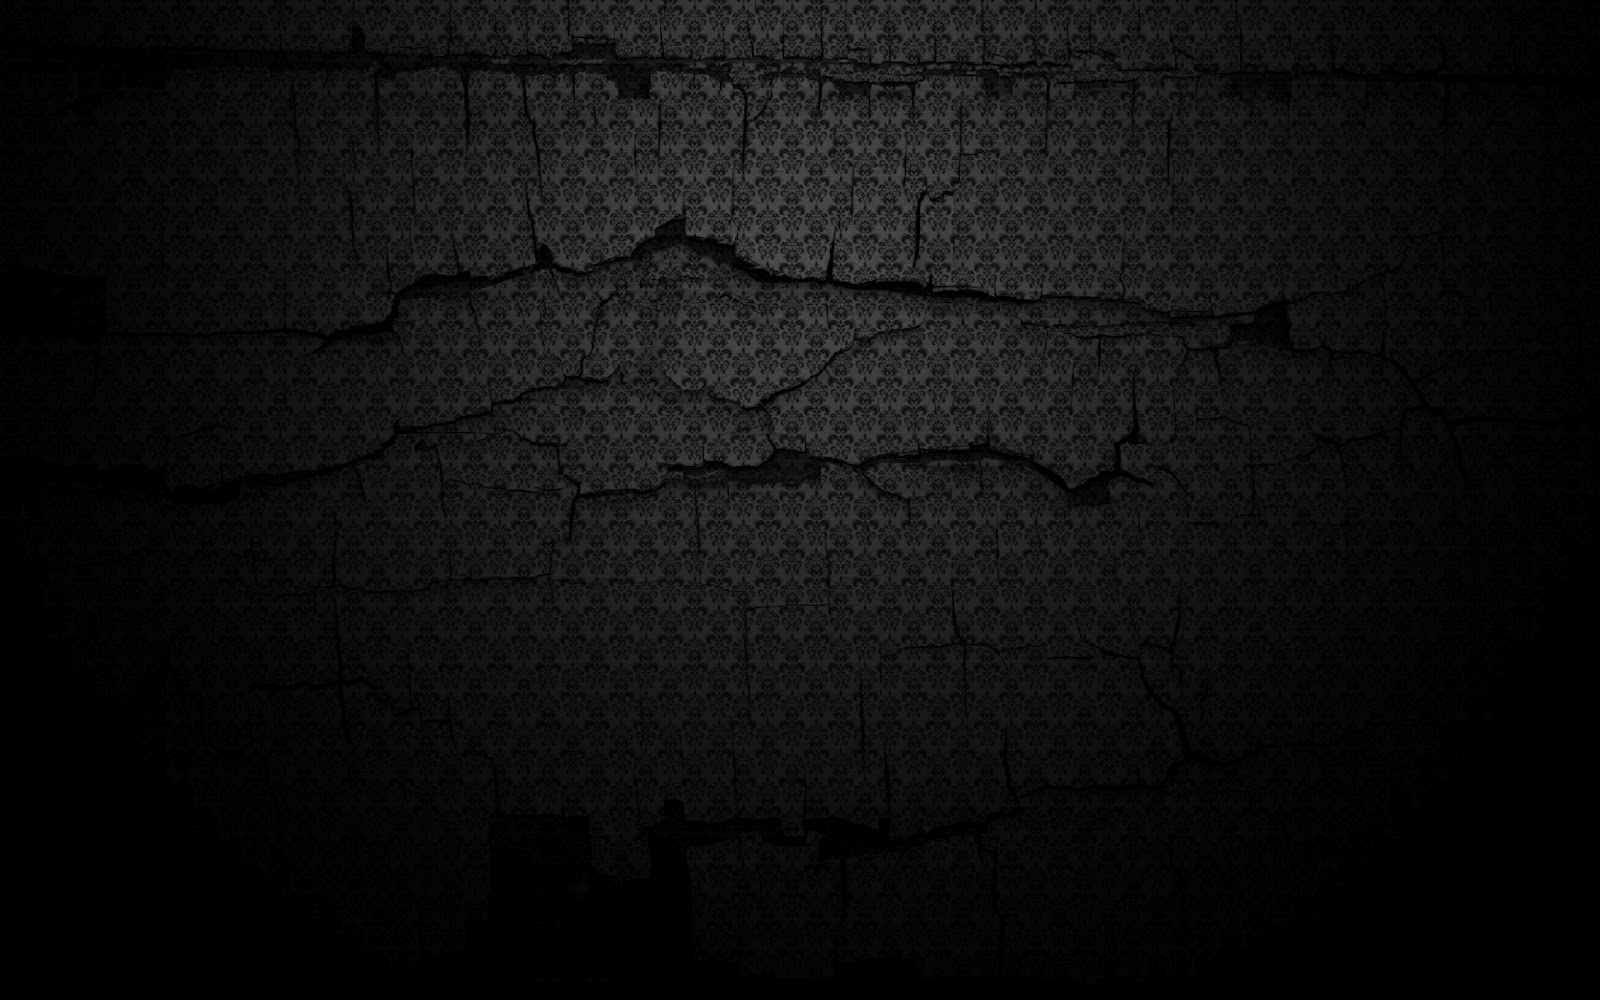 Dark Background Image